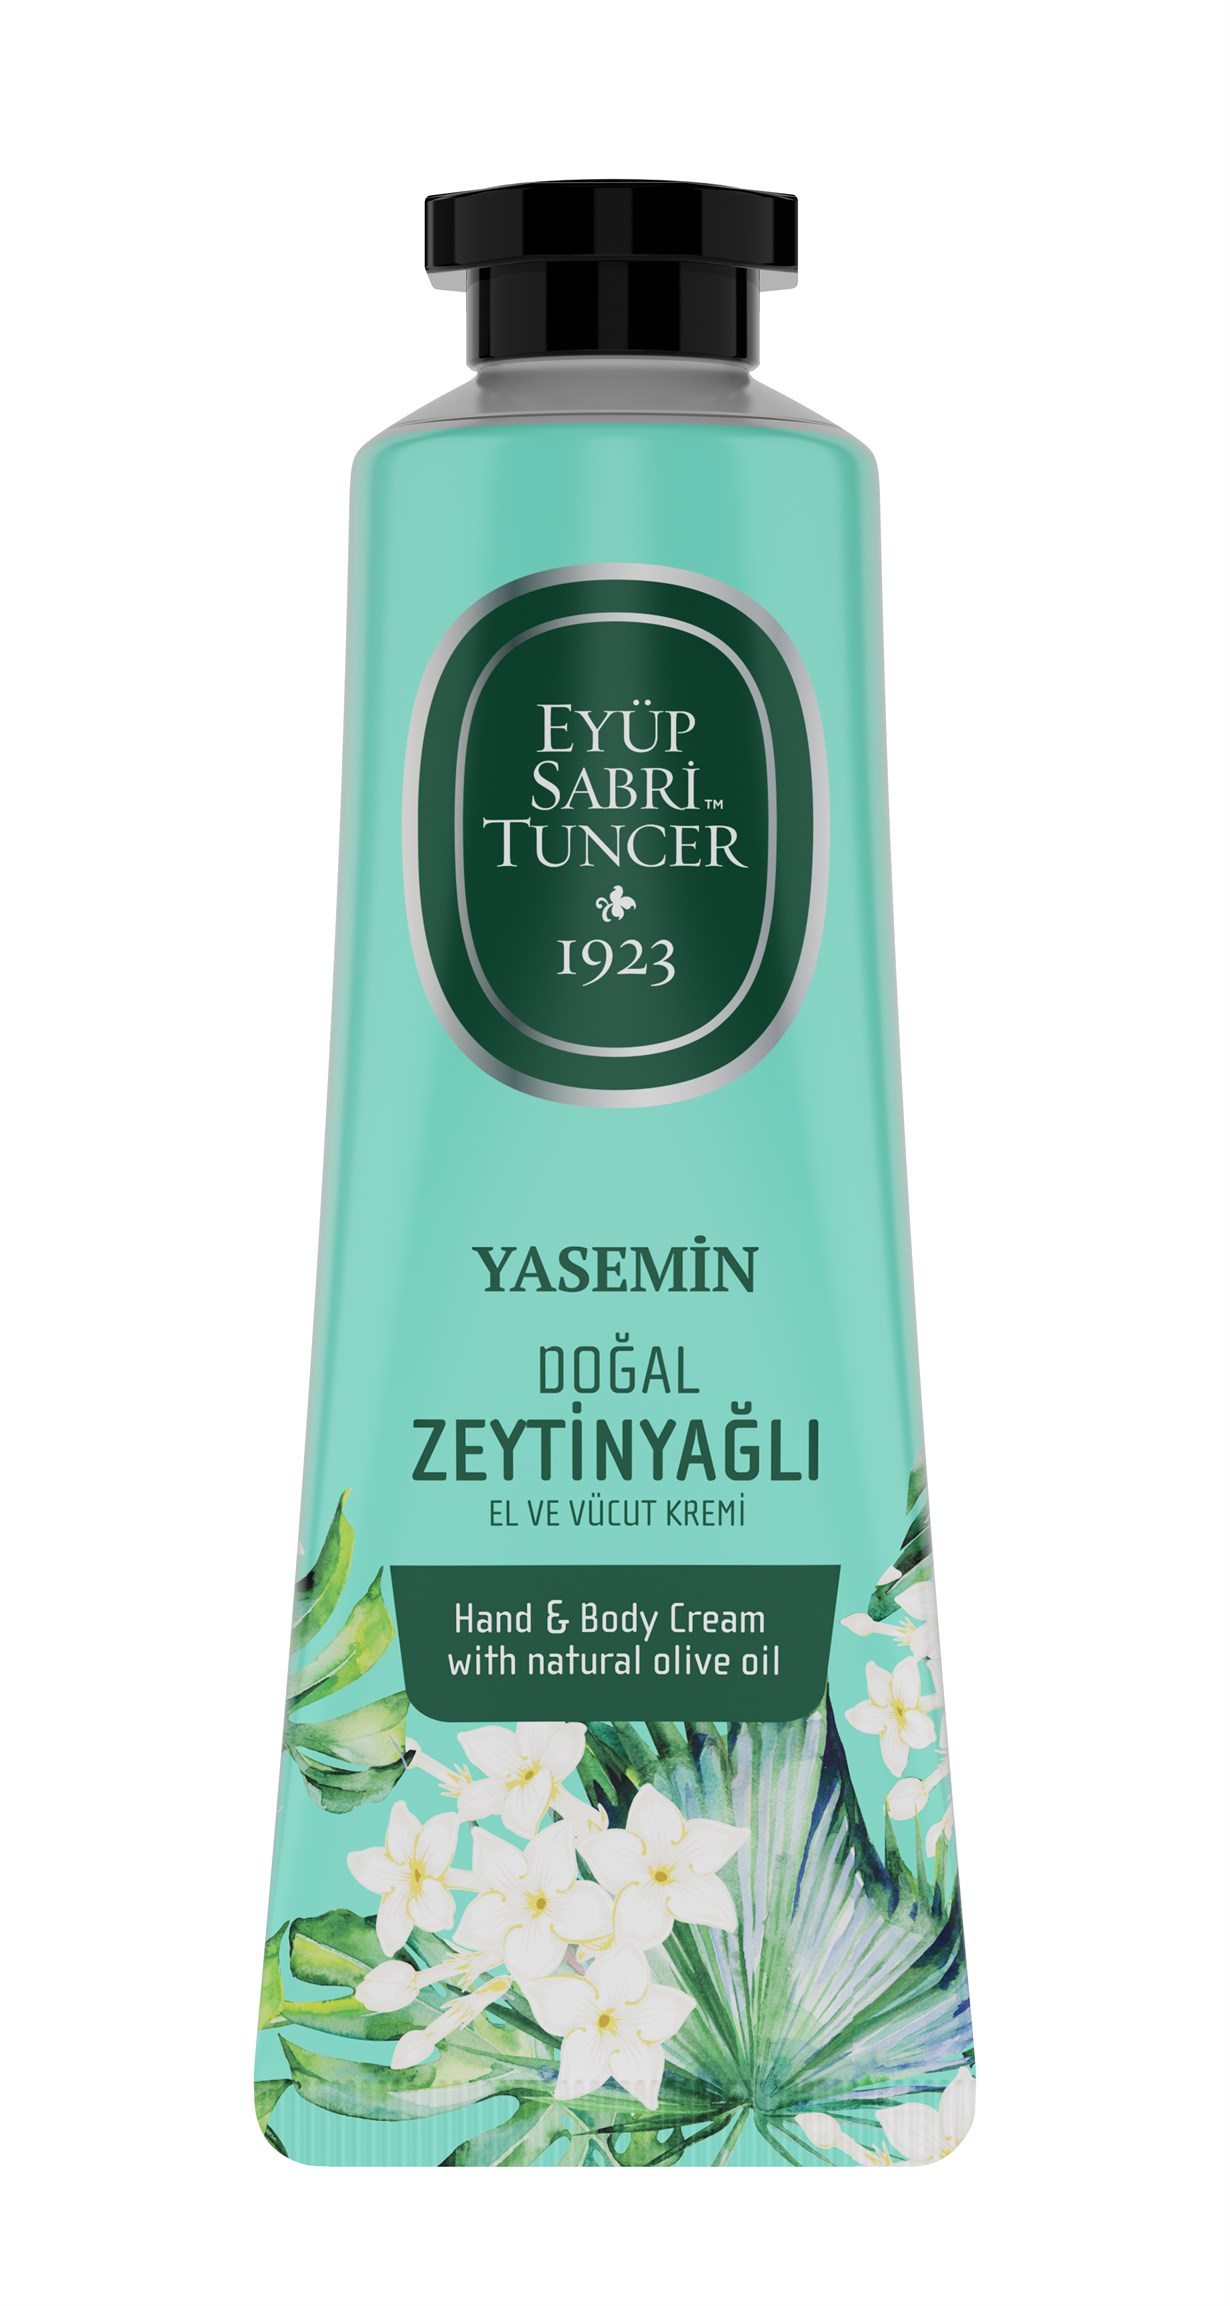 Крем для рук и тела Eyup Sabri Tuncer жасмин, с натуральным маслом оливы, 50 мл